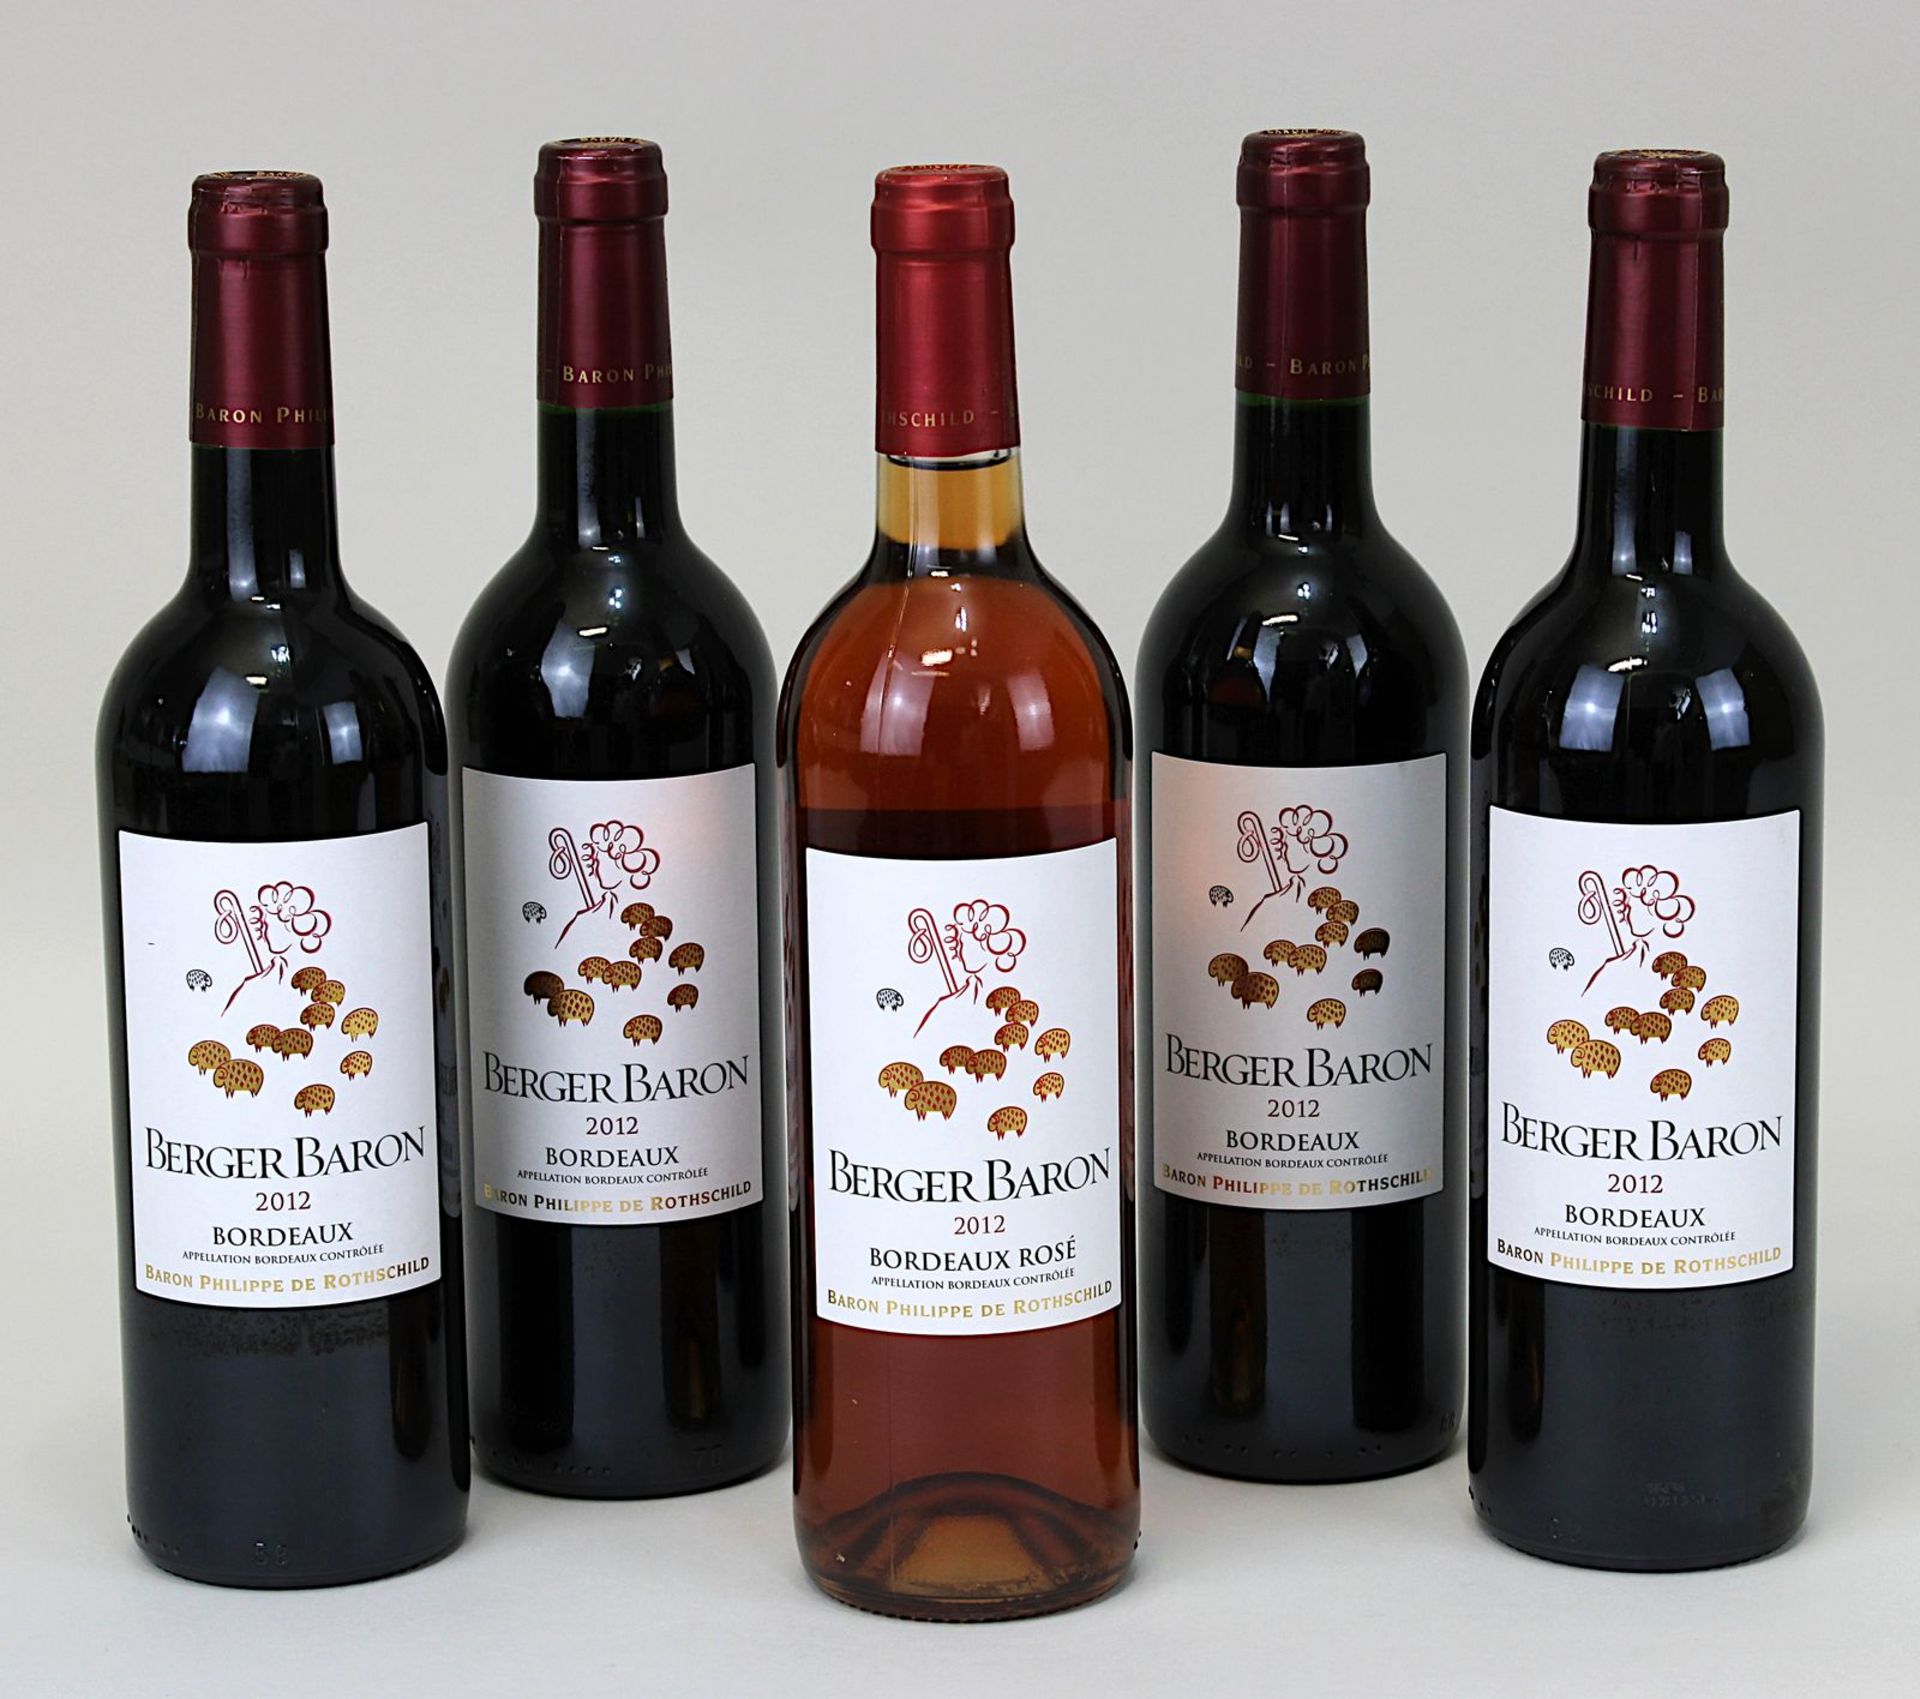 Fünf Flaschen 2012er Berger Baron, Bordeaux, Baron Philippe de Rothschild, Pauillac-Gironde, davon